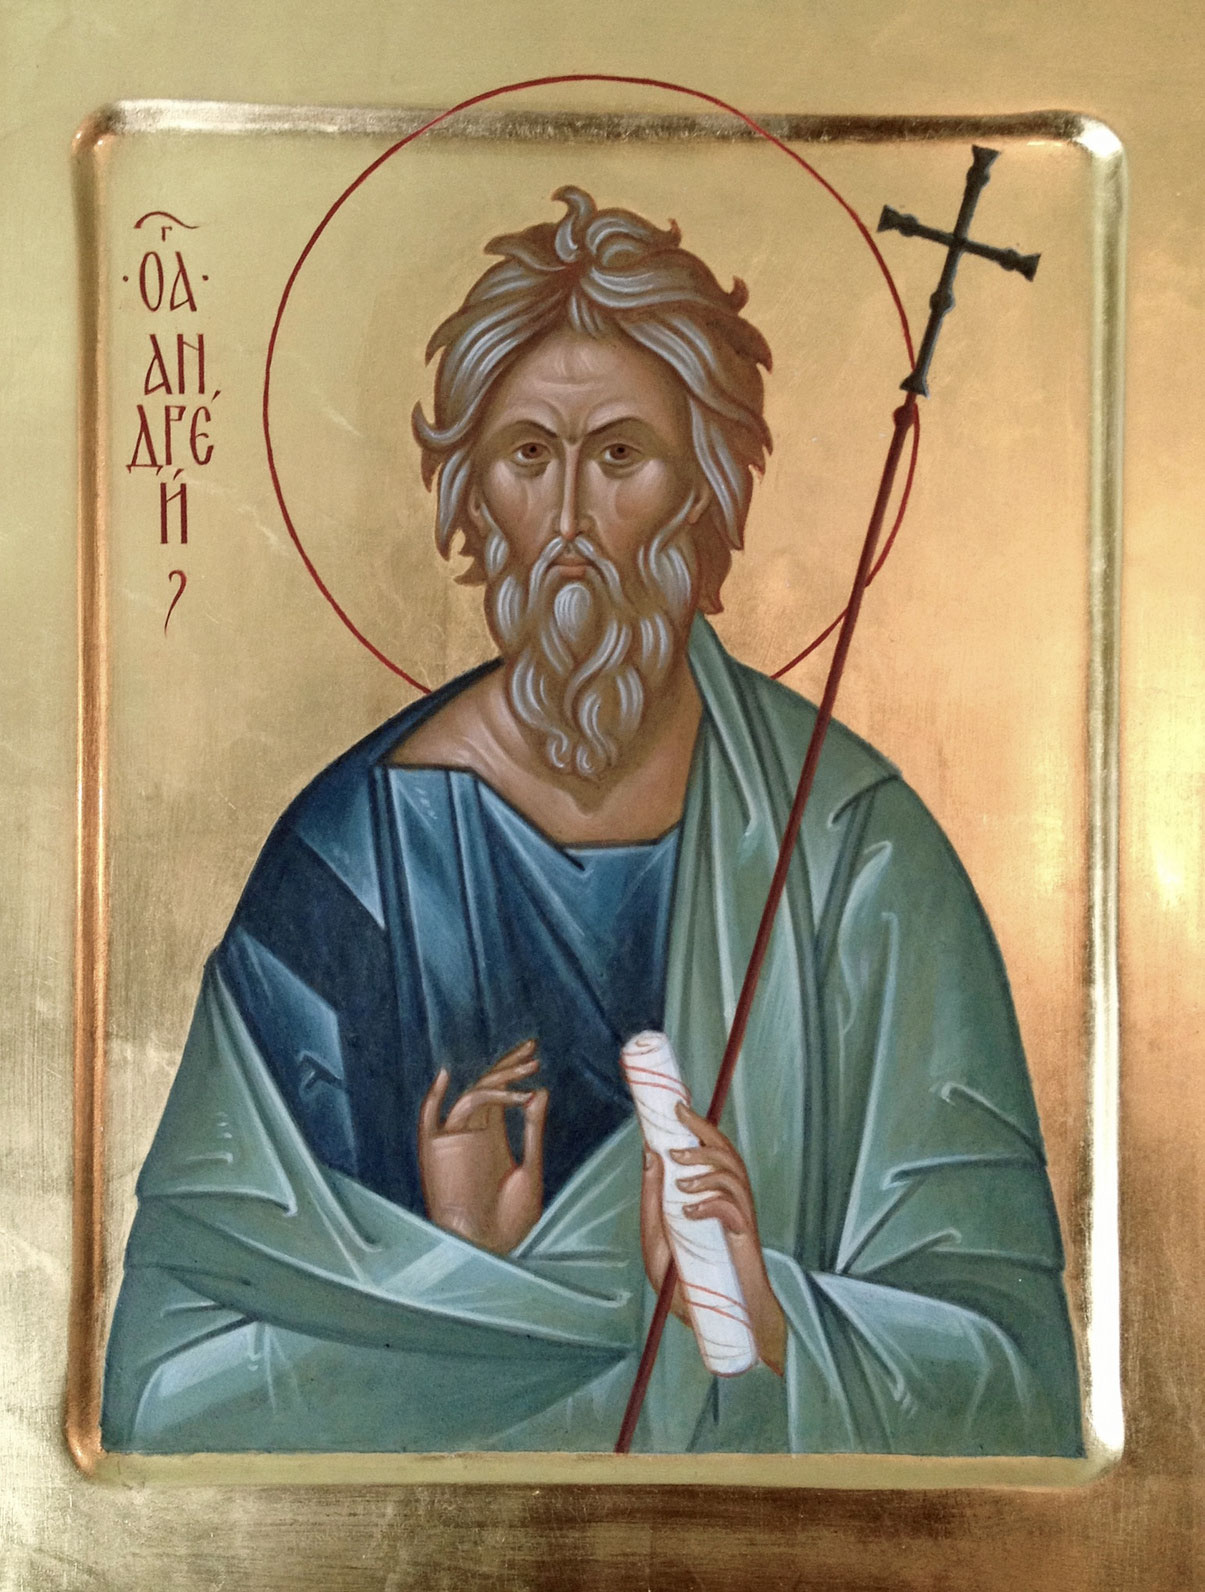 Dimanche 13 décembre 2020 — Saint André, le premier apôtre appelé